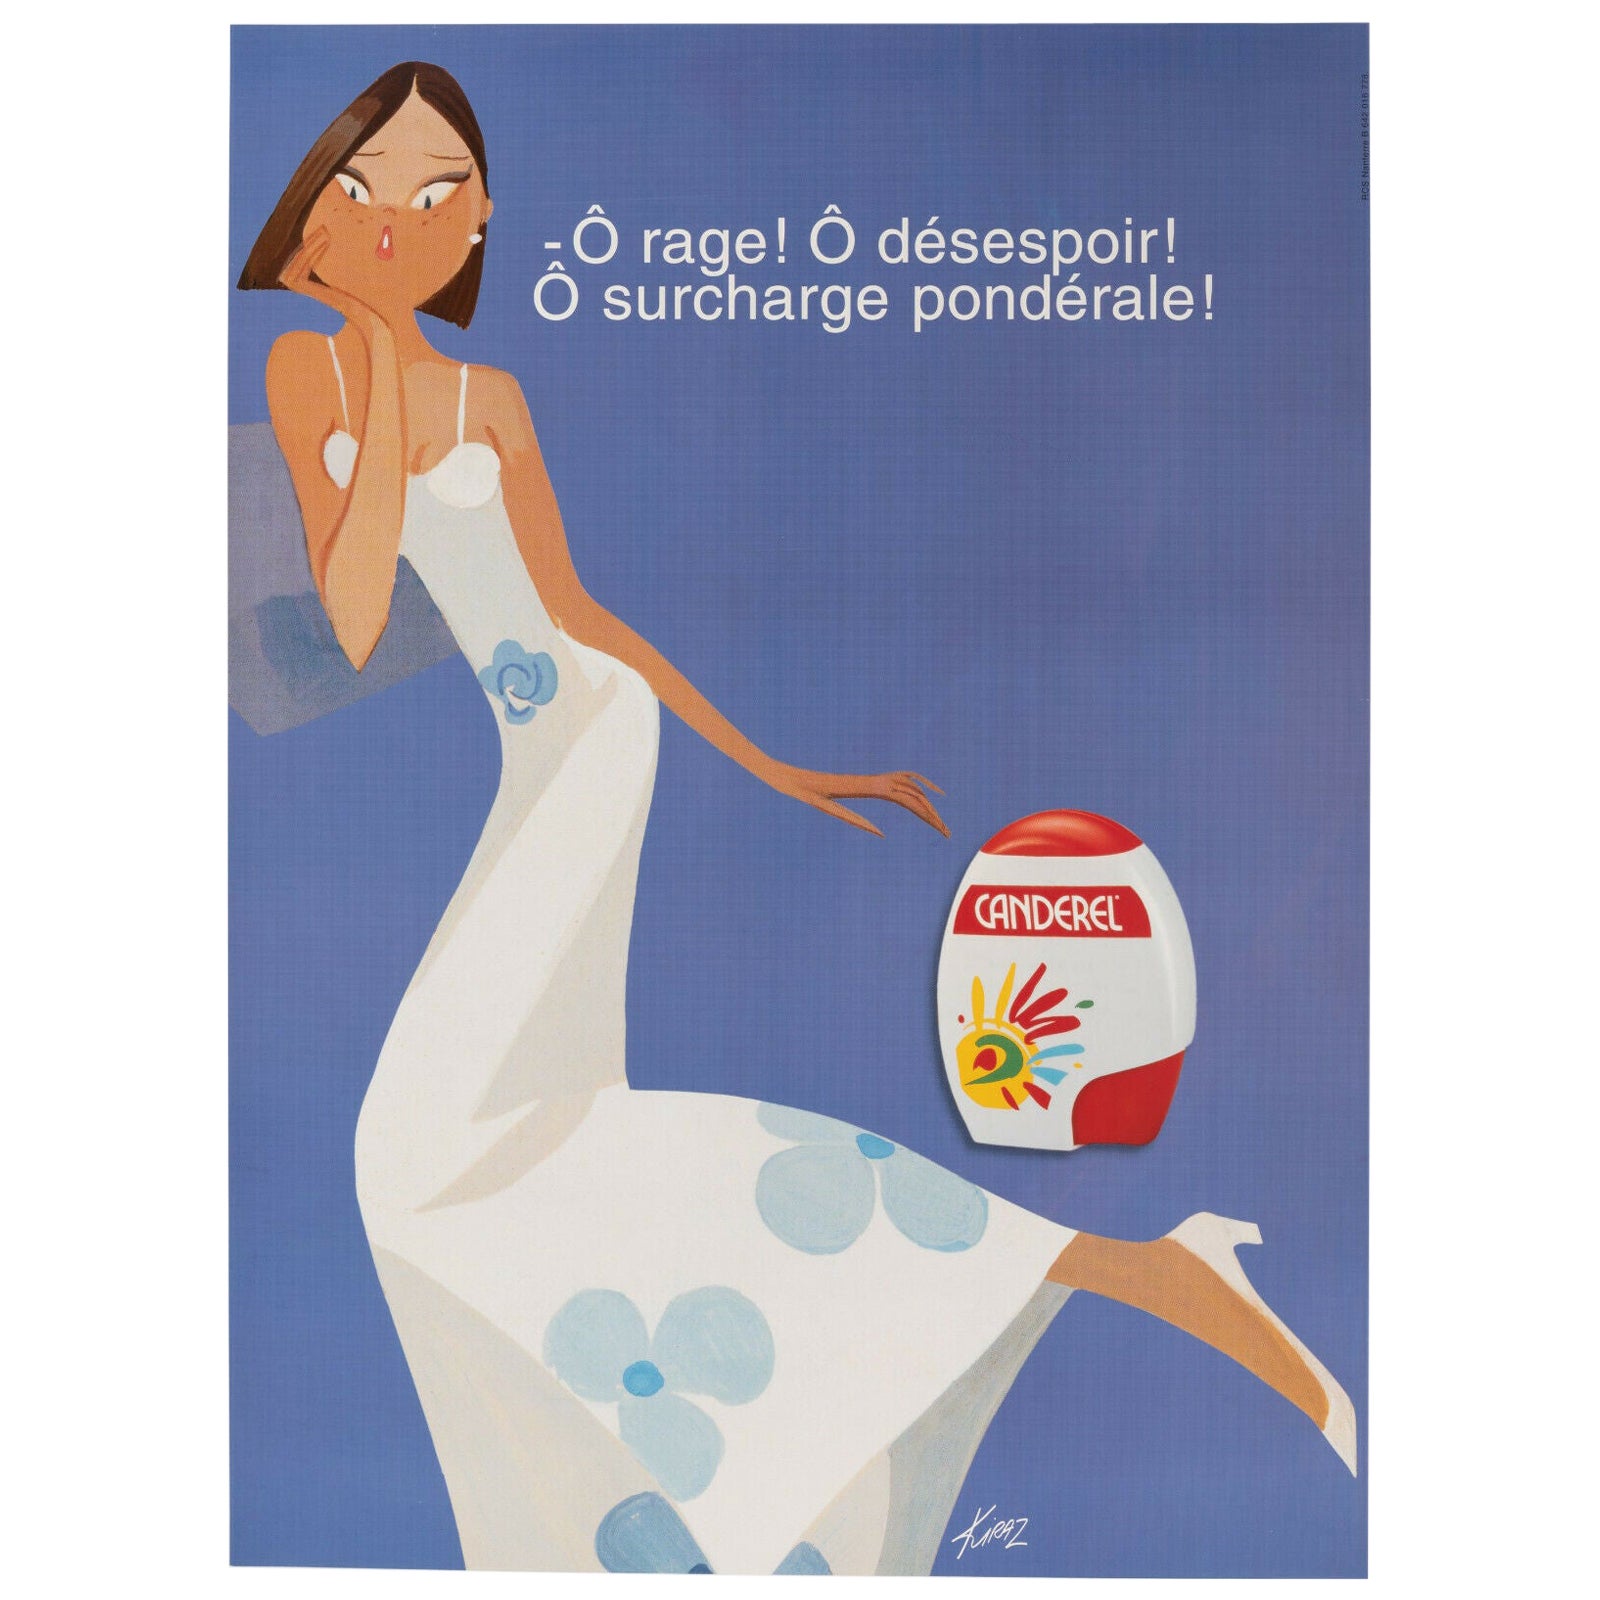 Original Poster-Kiraz-Canderel-Rage-Desespoir-Parisiennes, c.1990 For Sale